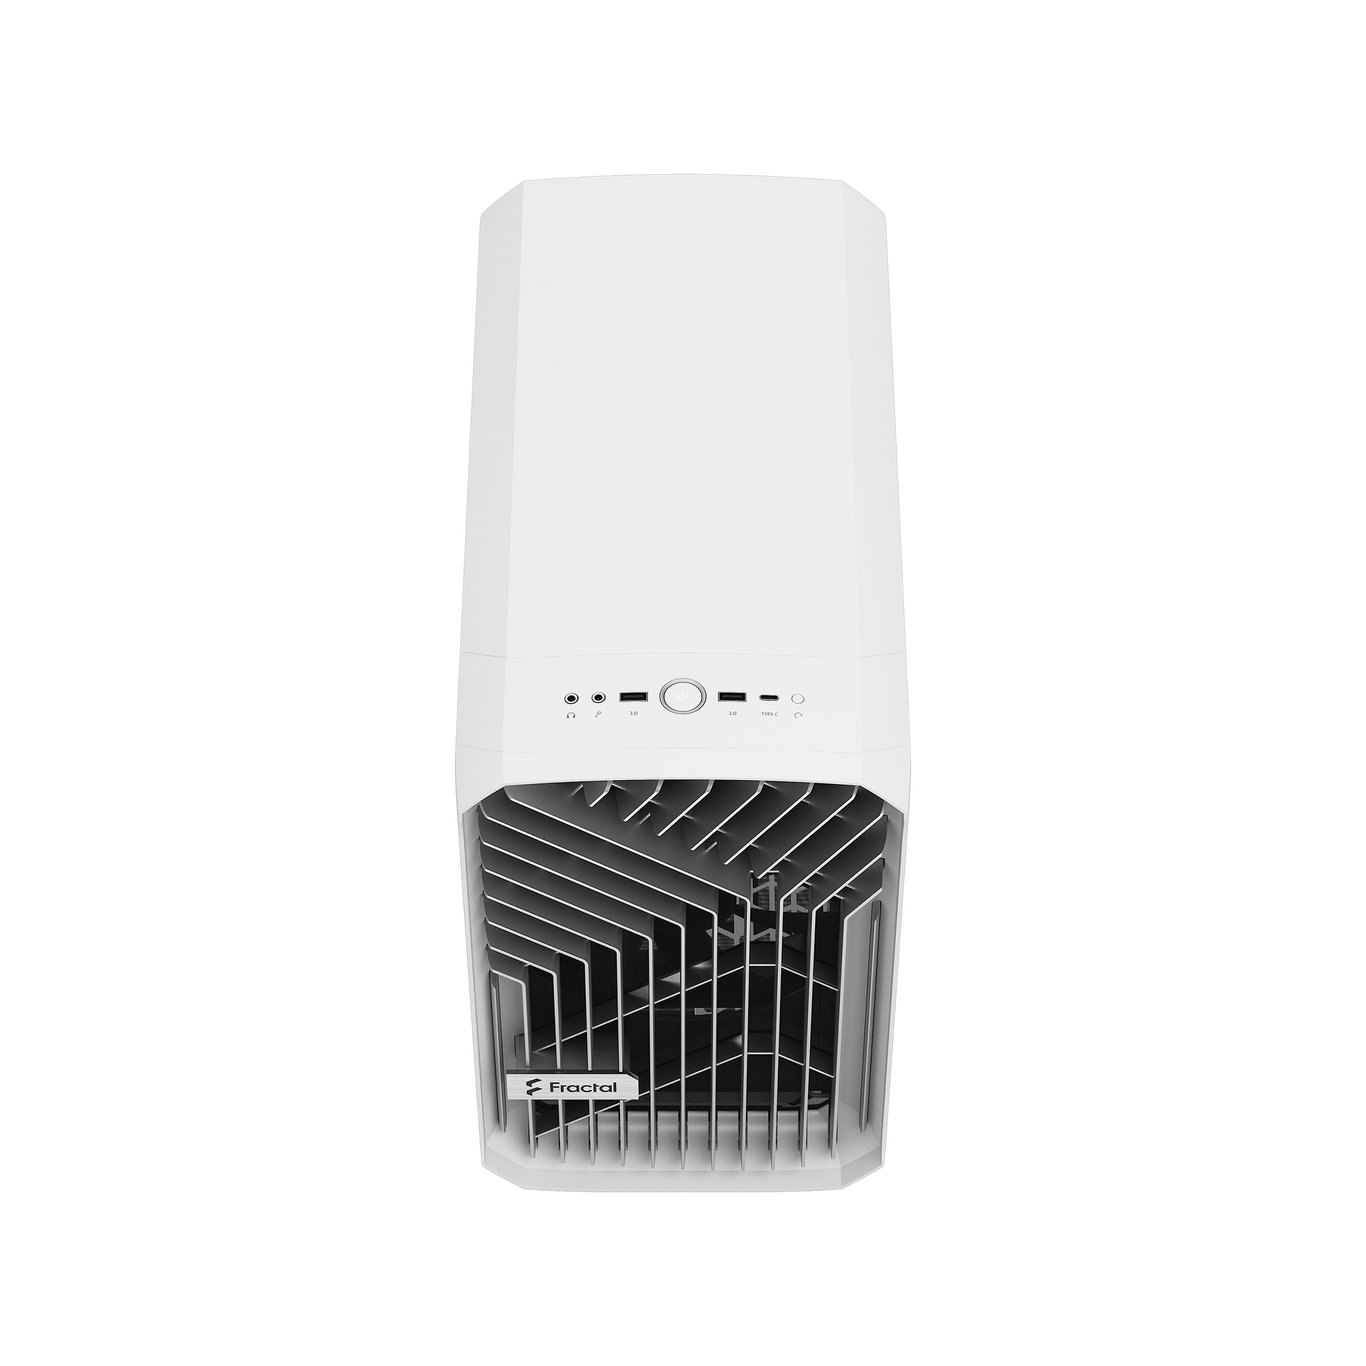 Fractal Design Torrent Nano Clear Mini-ITX 機箱 - White 白色